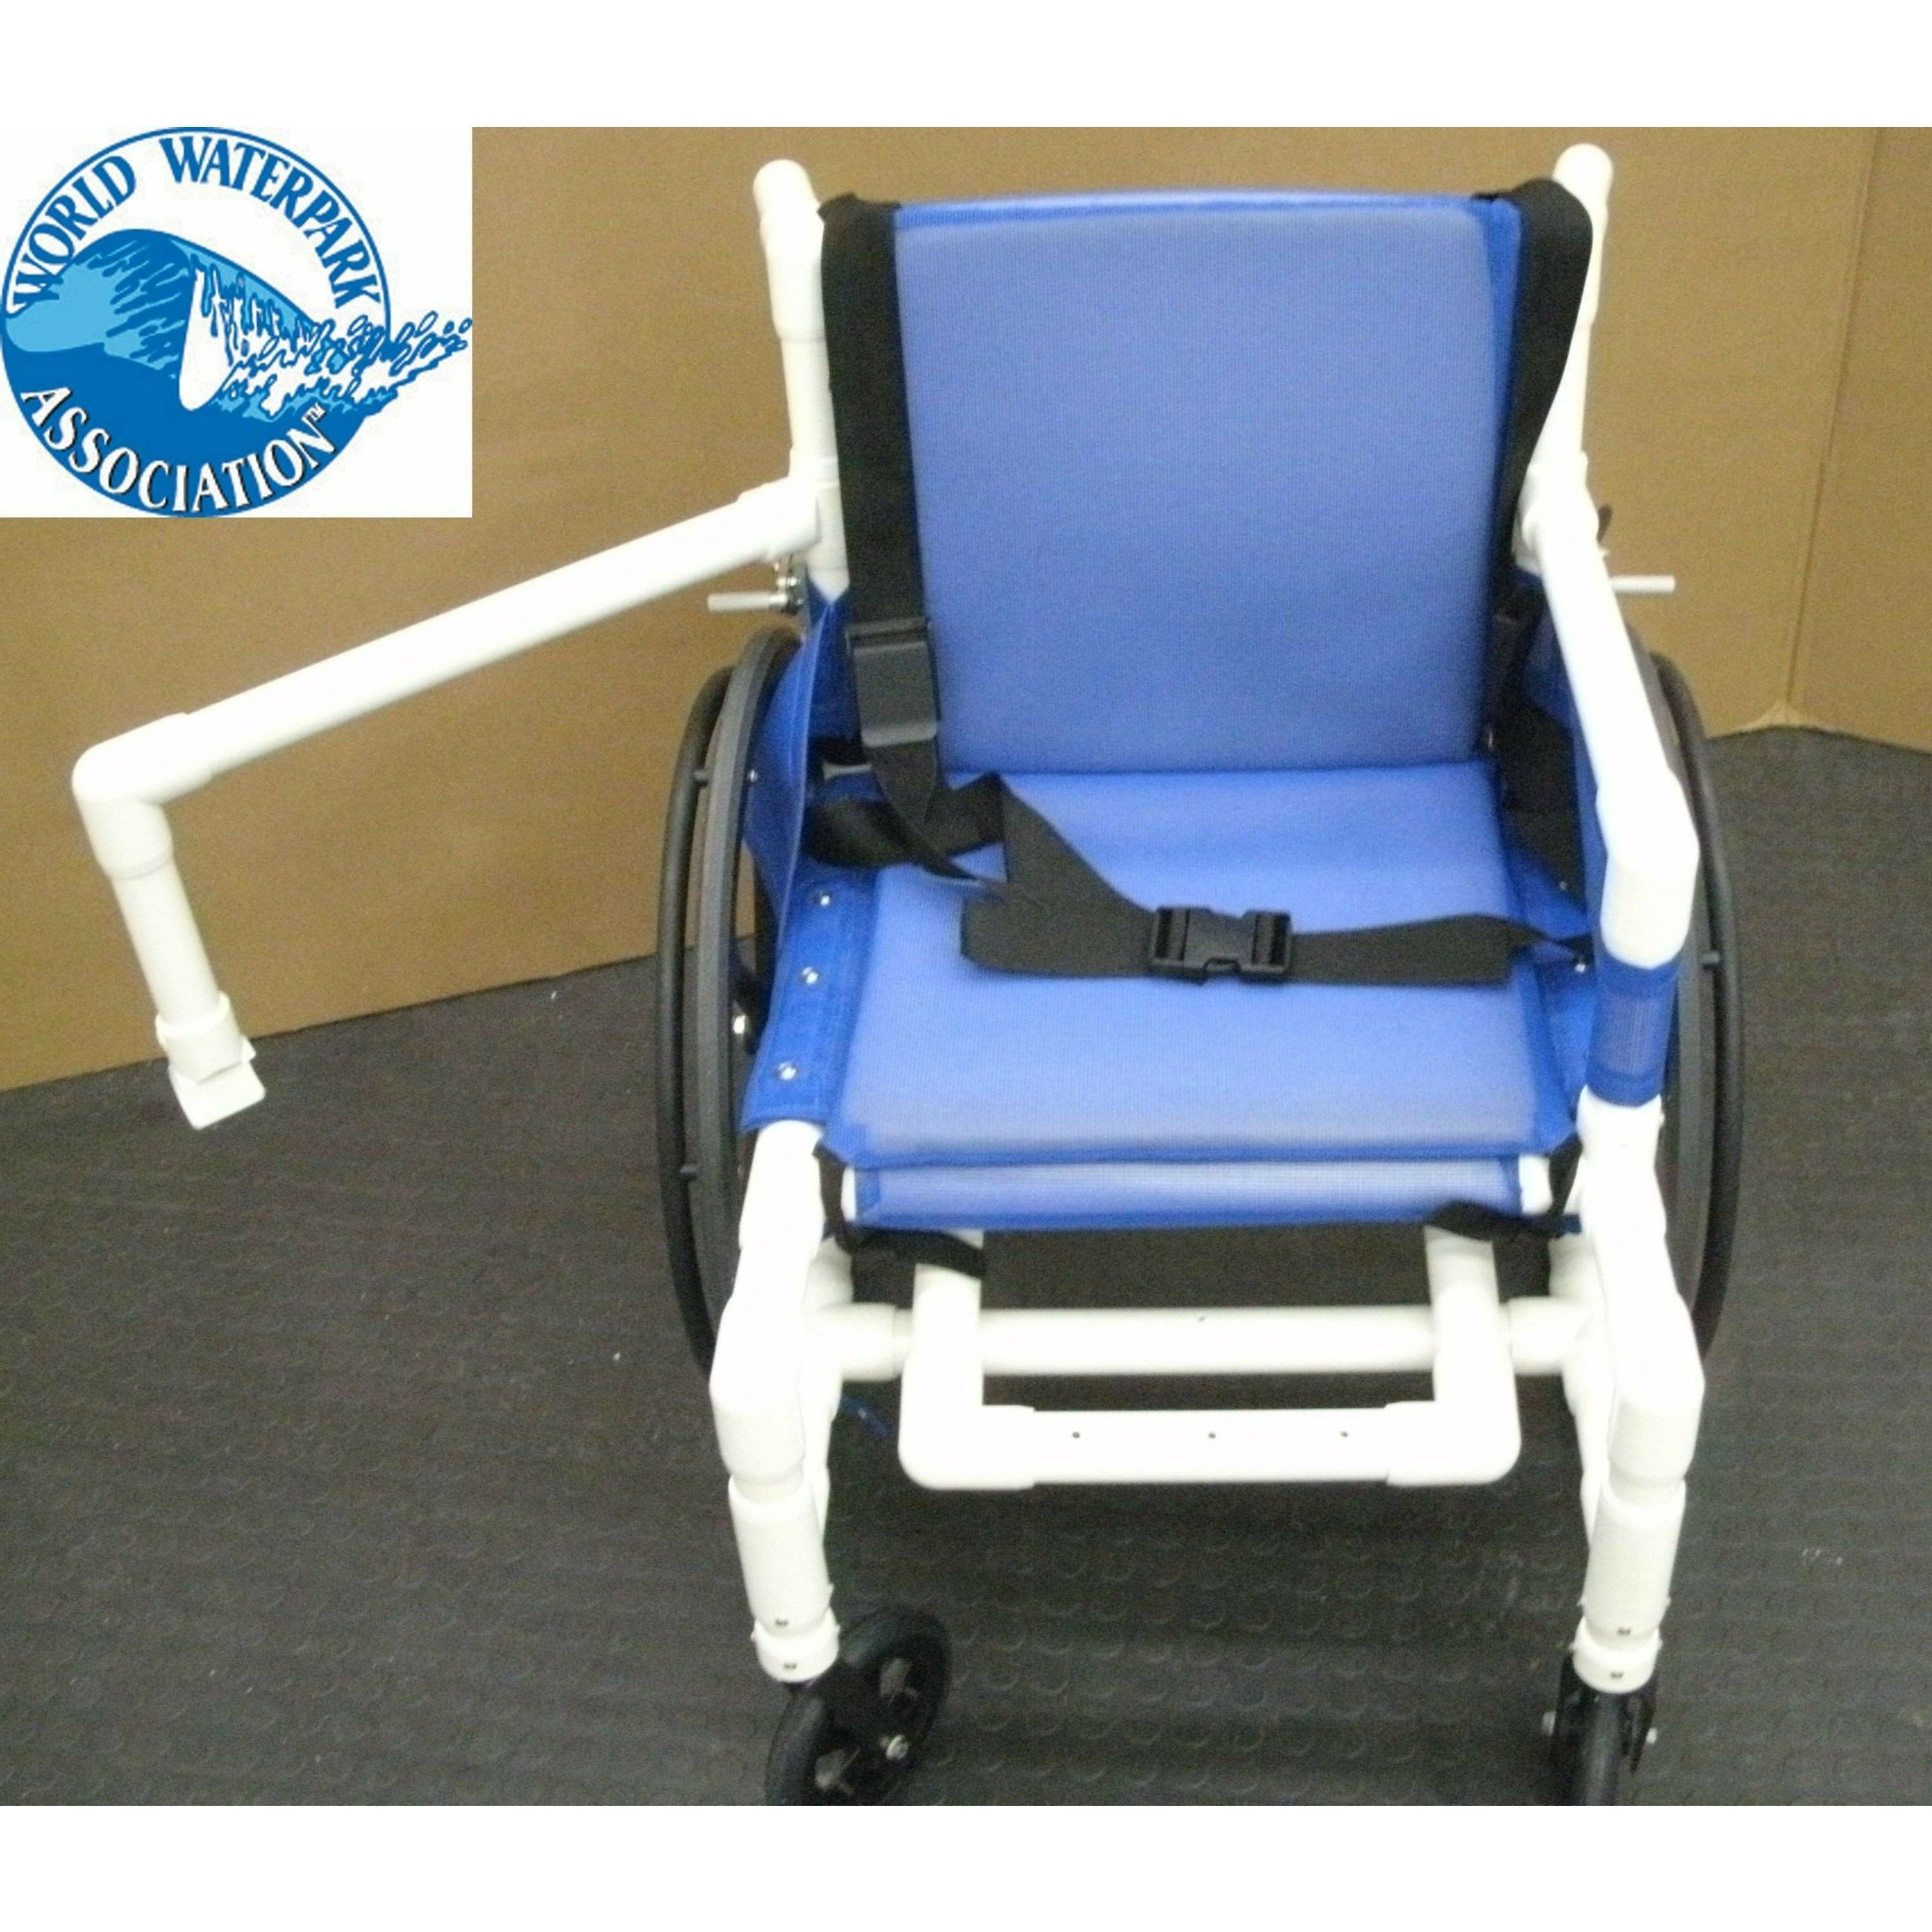 Aquatrek2 AQ-250-WC Aquatic Pool Wheelchair